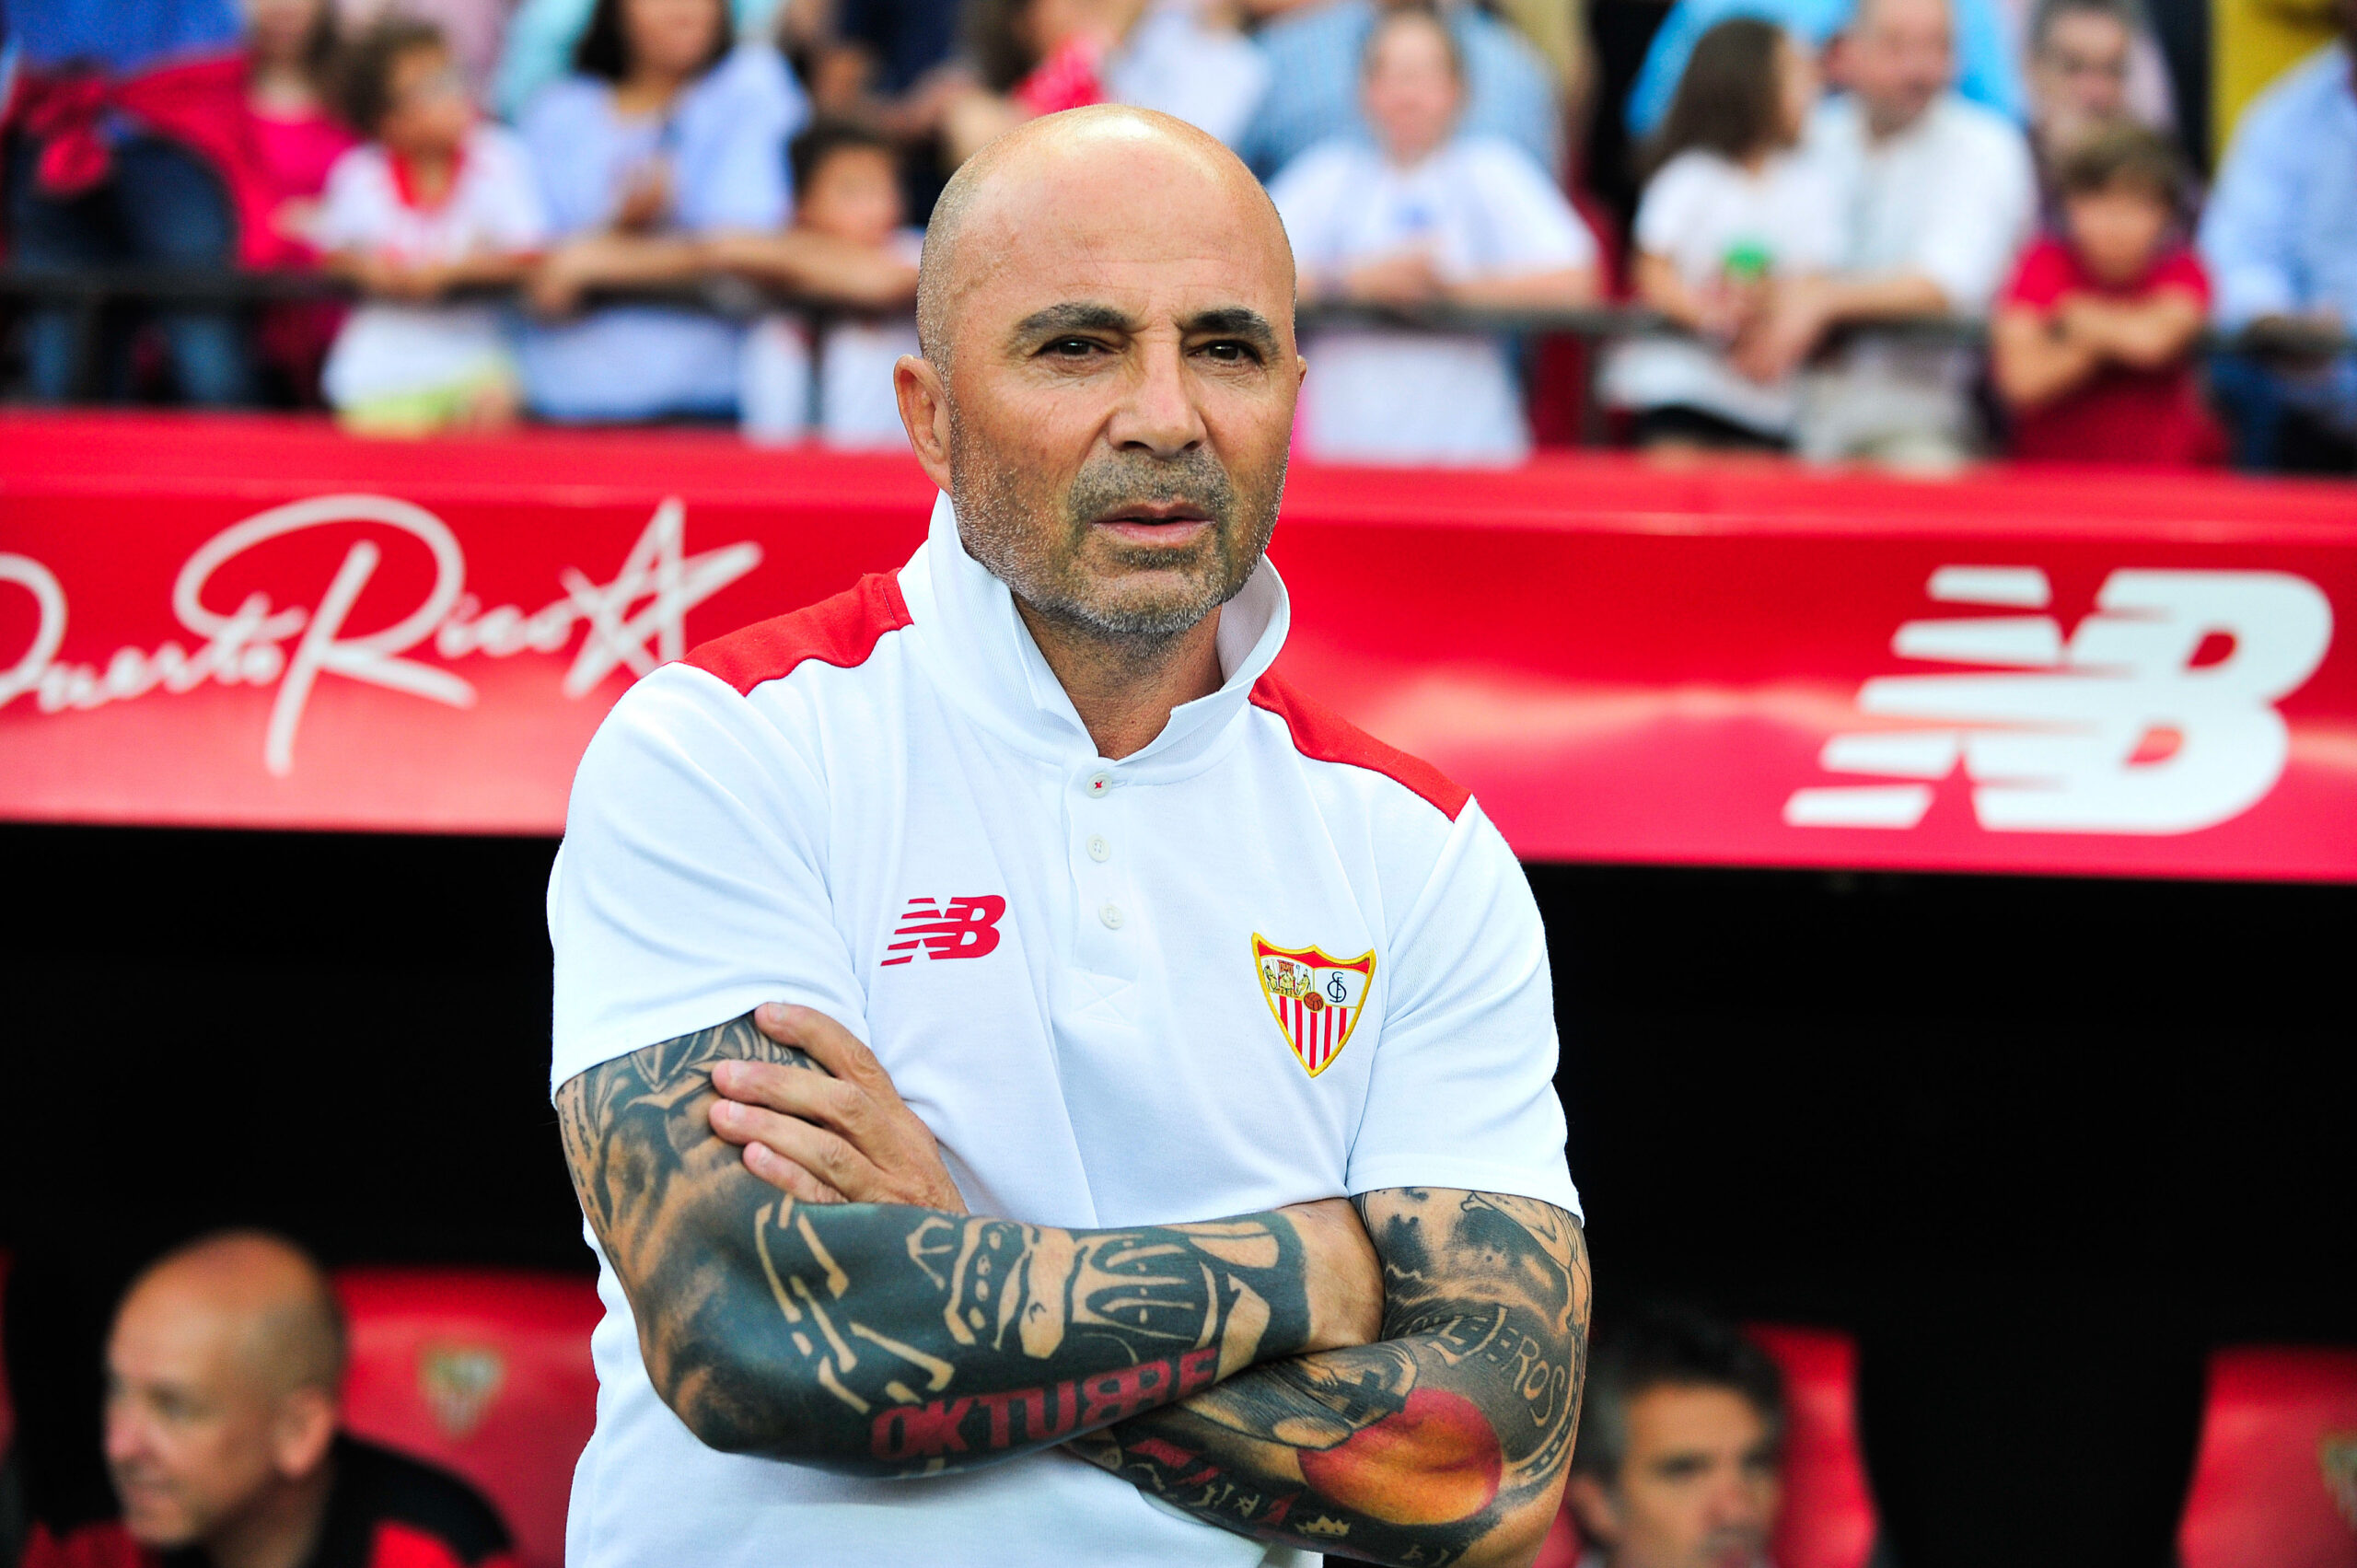 Officiel : Le FC Seville annonce le remplaçant de Jorge Sampaoli